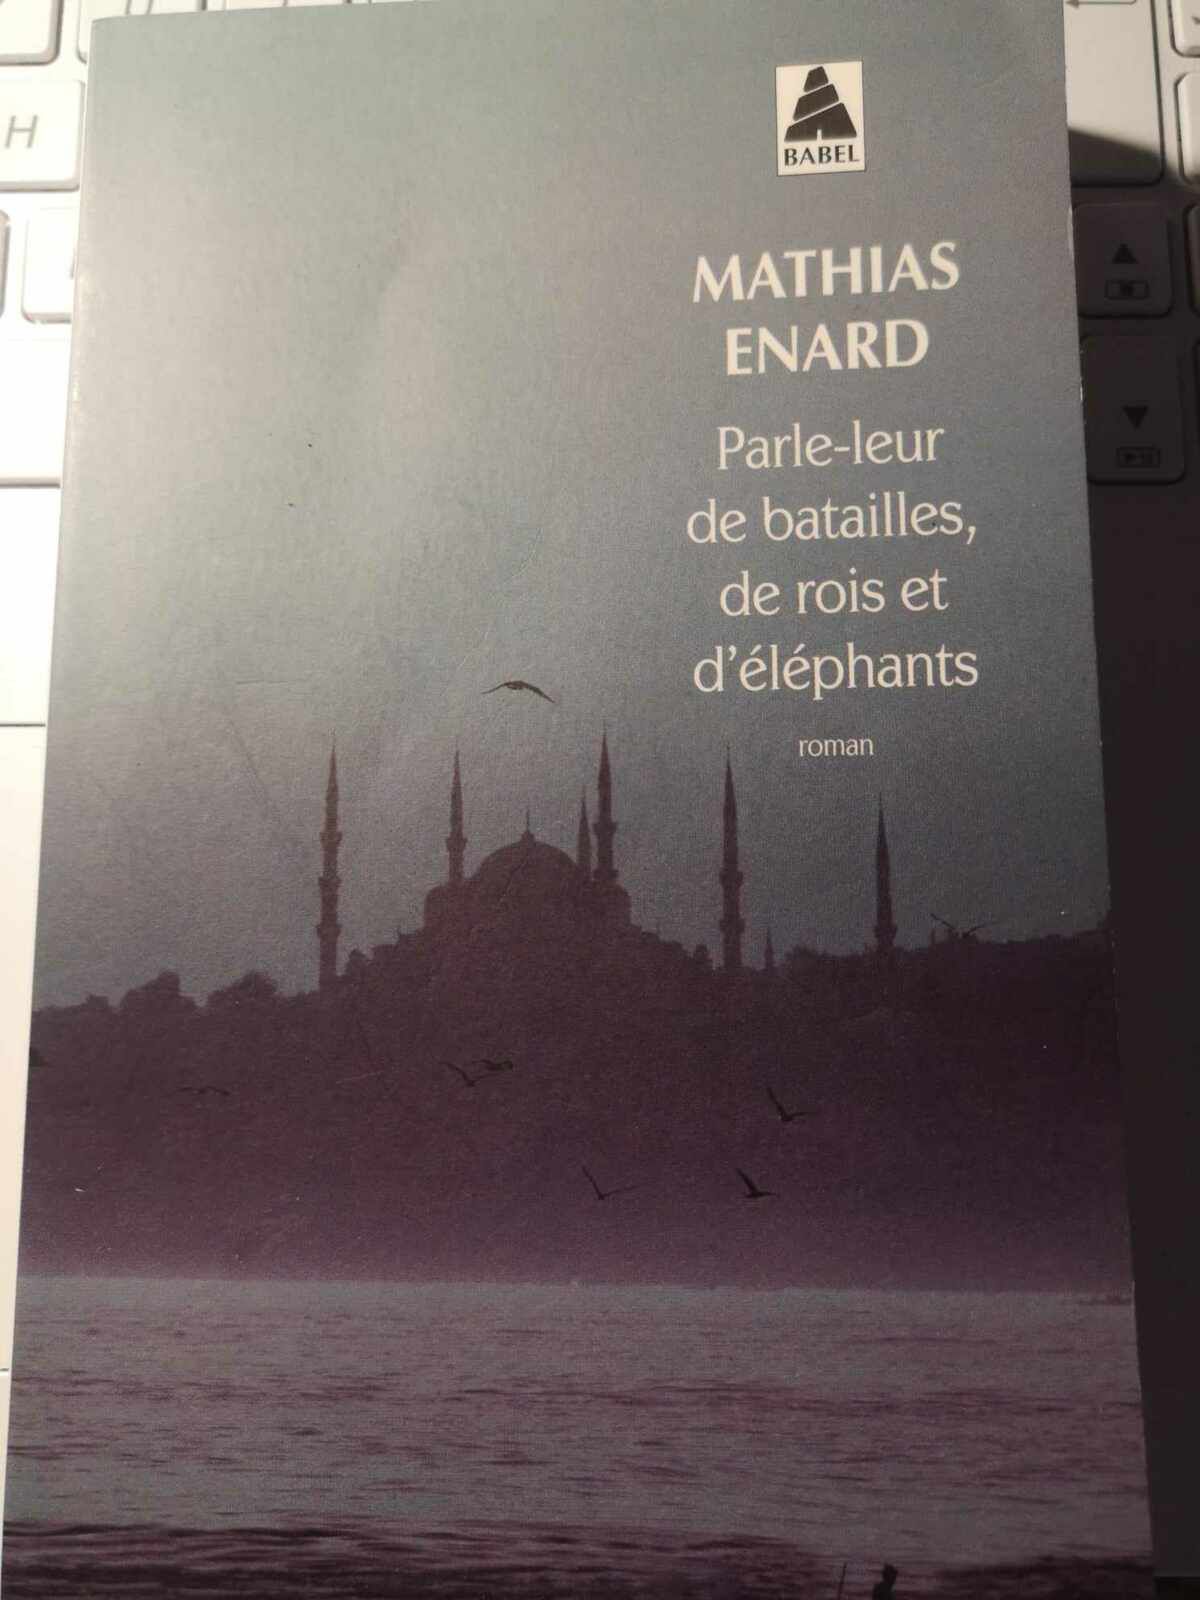 Dosette lecture n°98 Mathias Enard Parle-leur batailles, rois d’éléphants. ange passe chapelle Sixtine